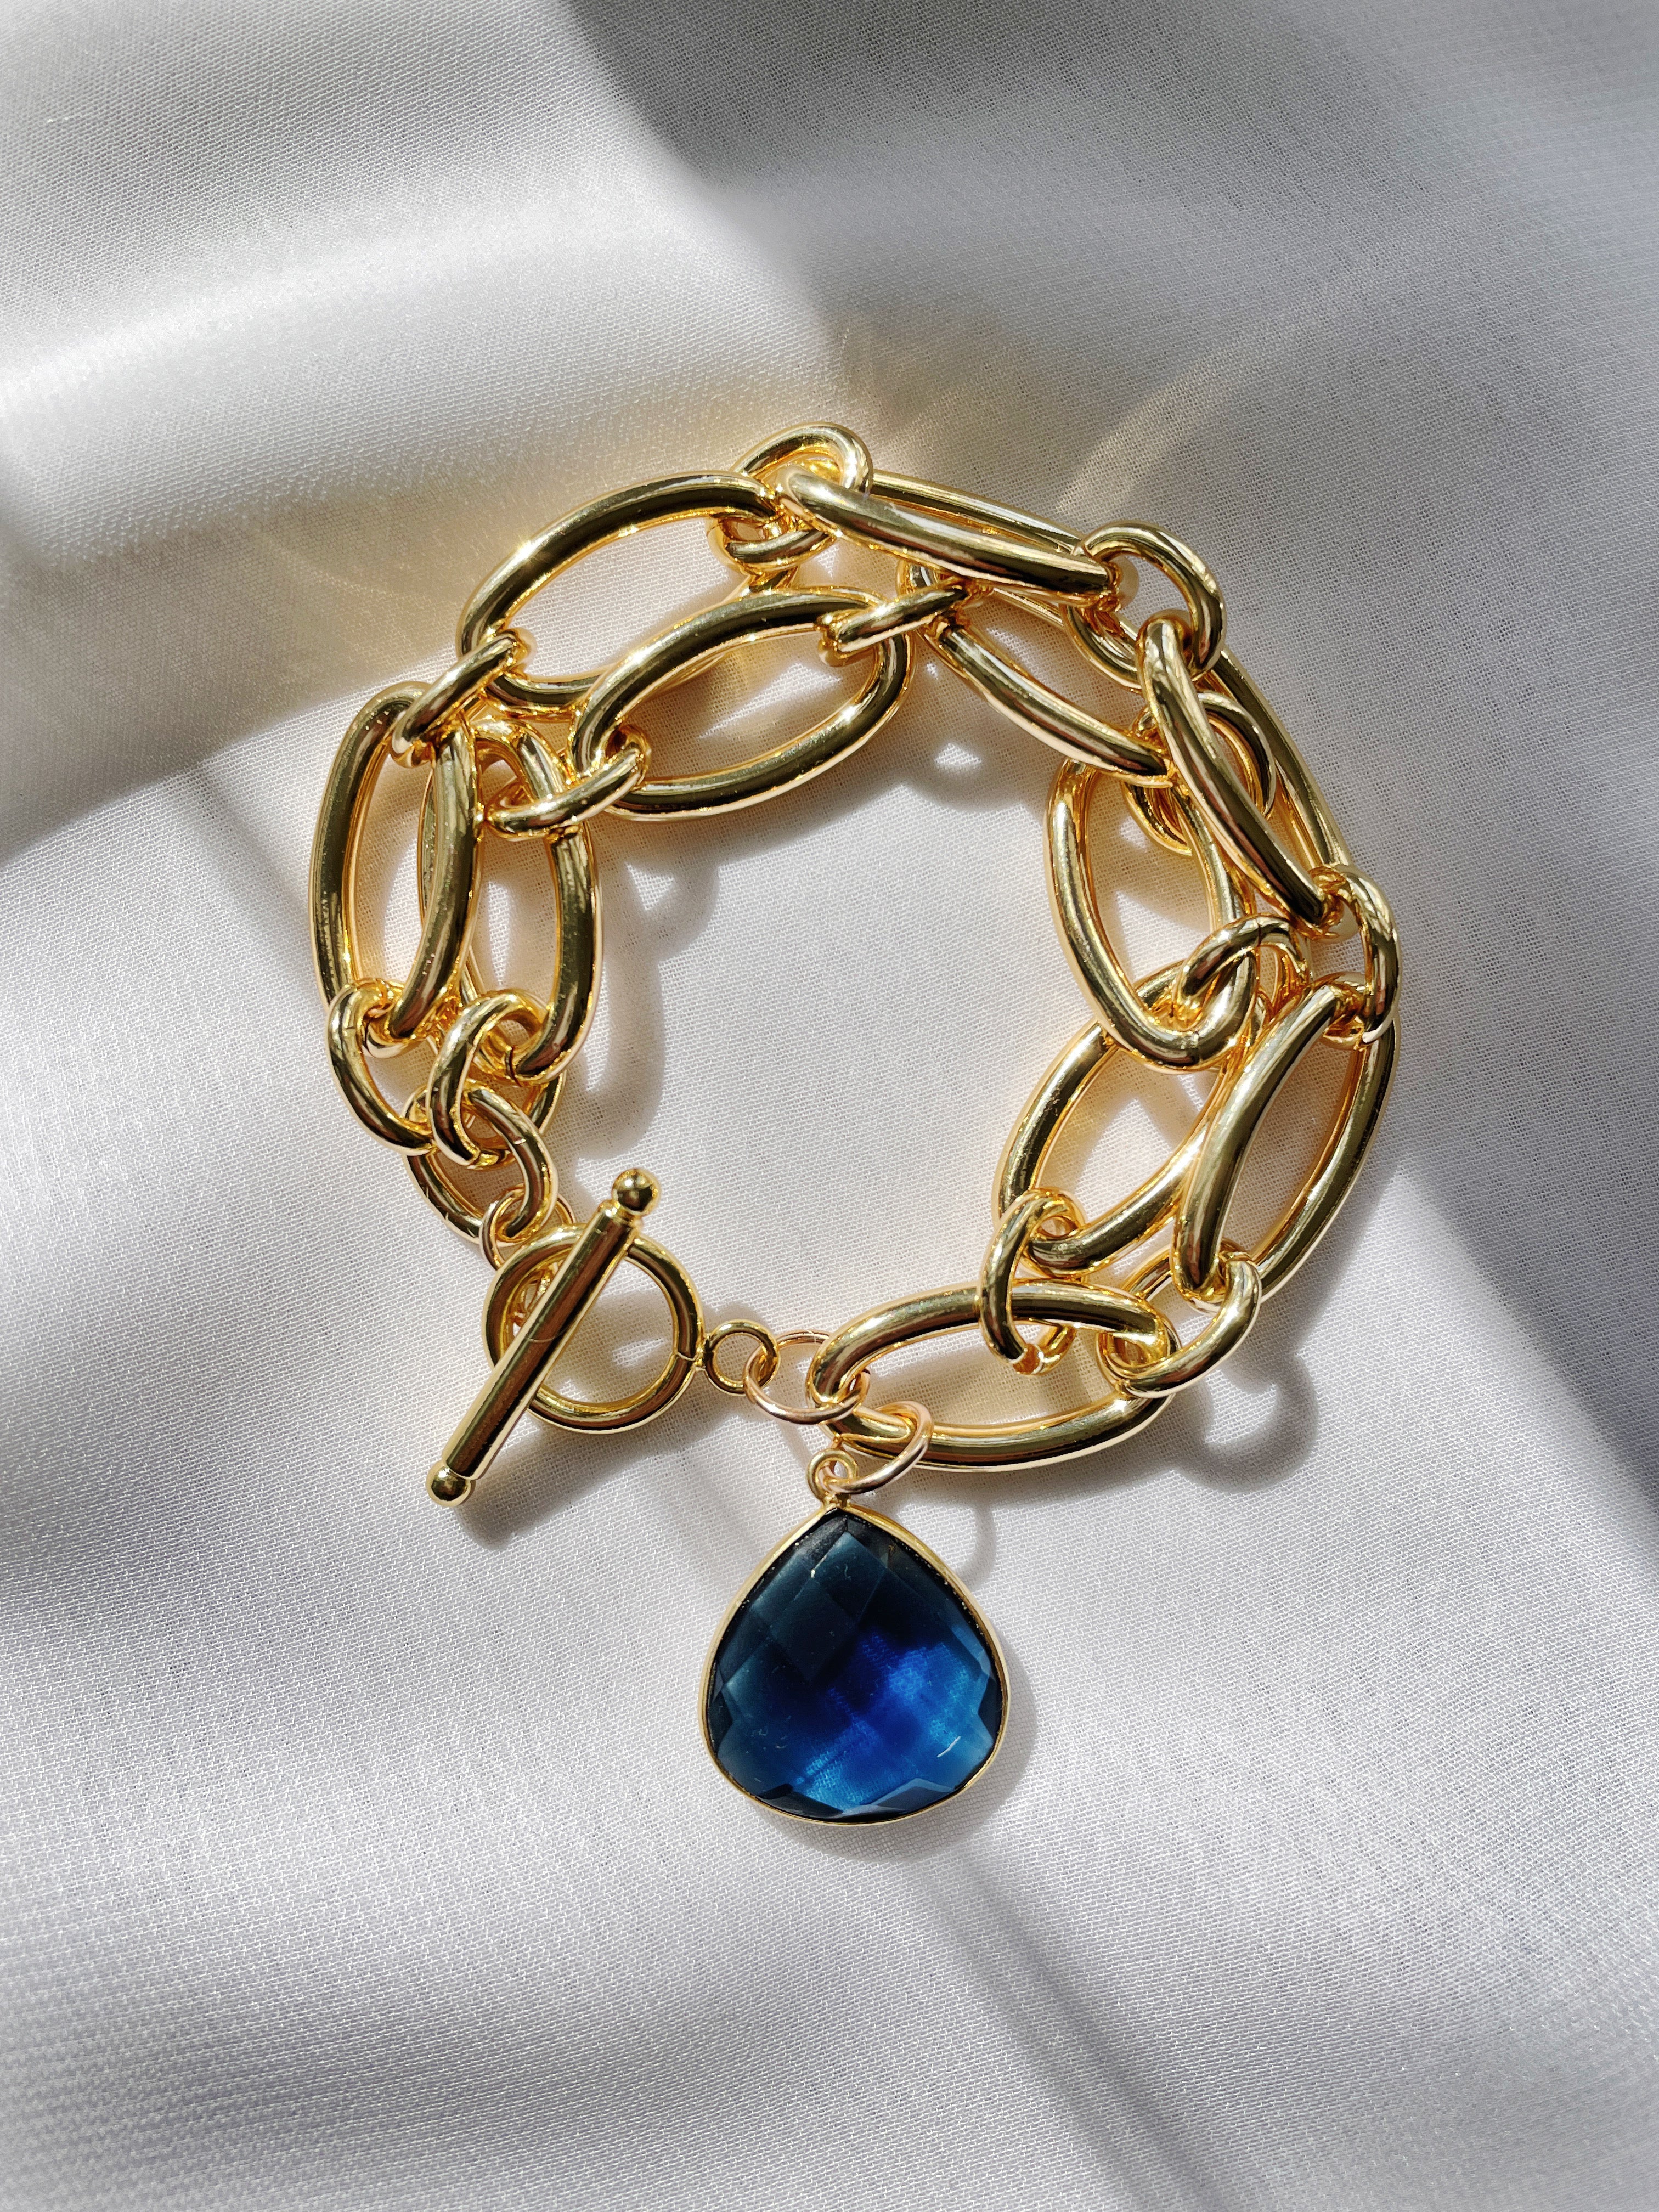 The Janell London Blue Bracelet